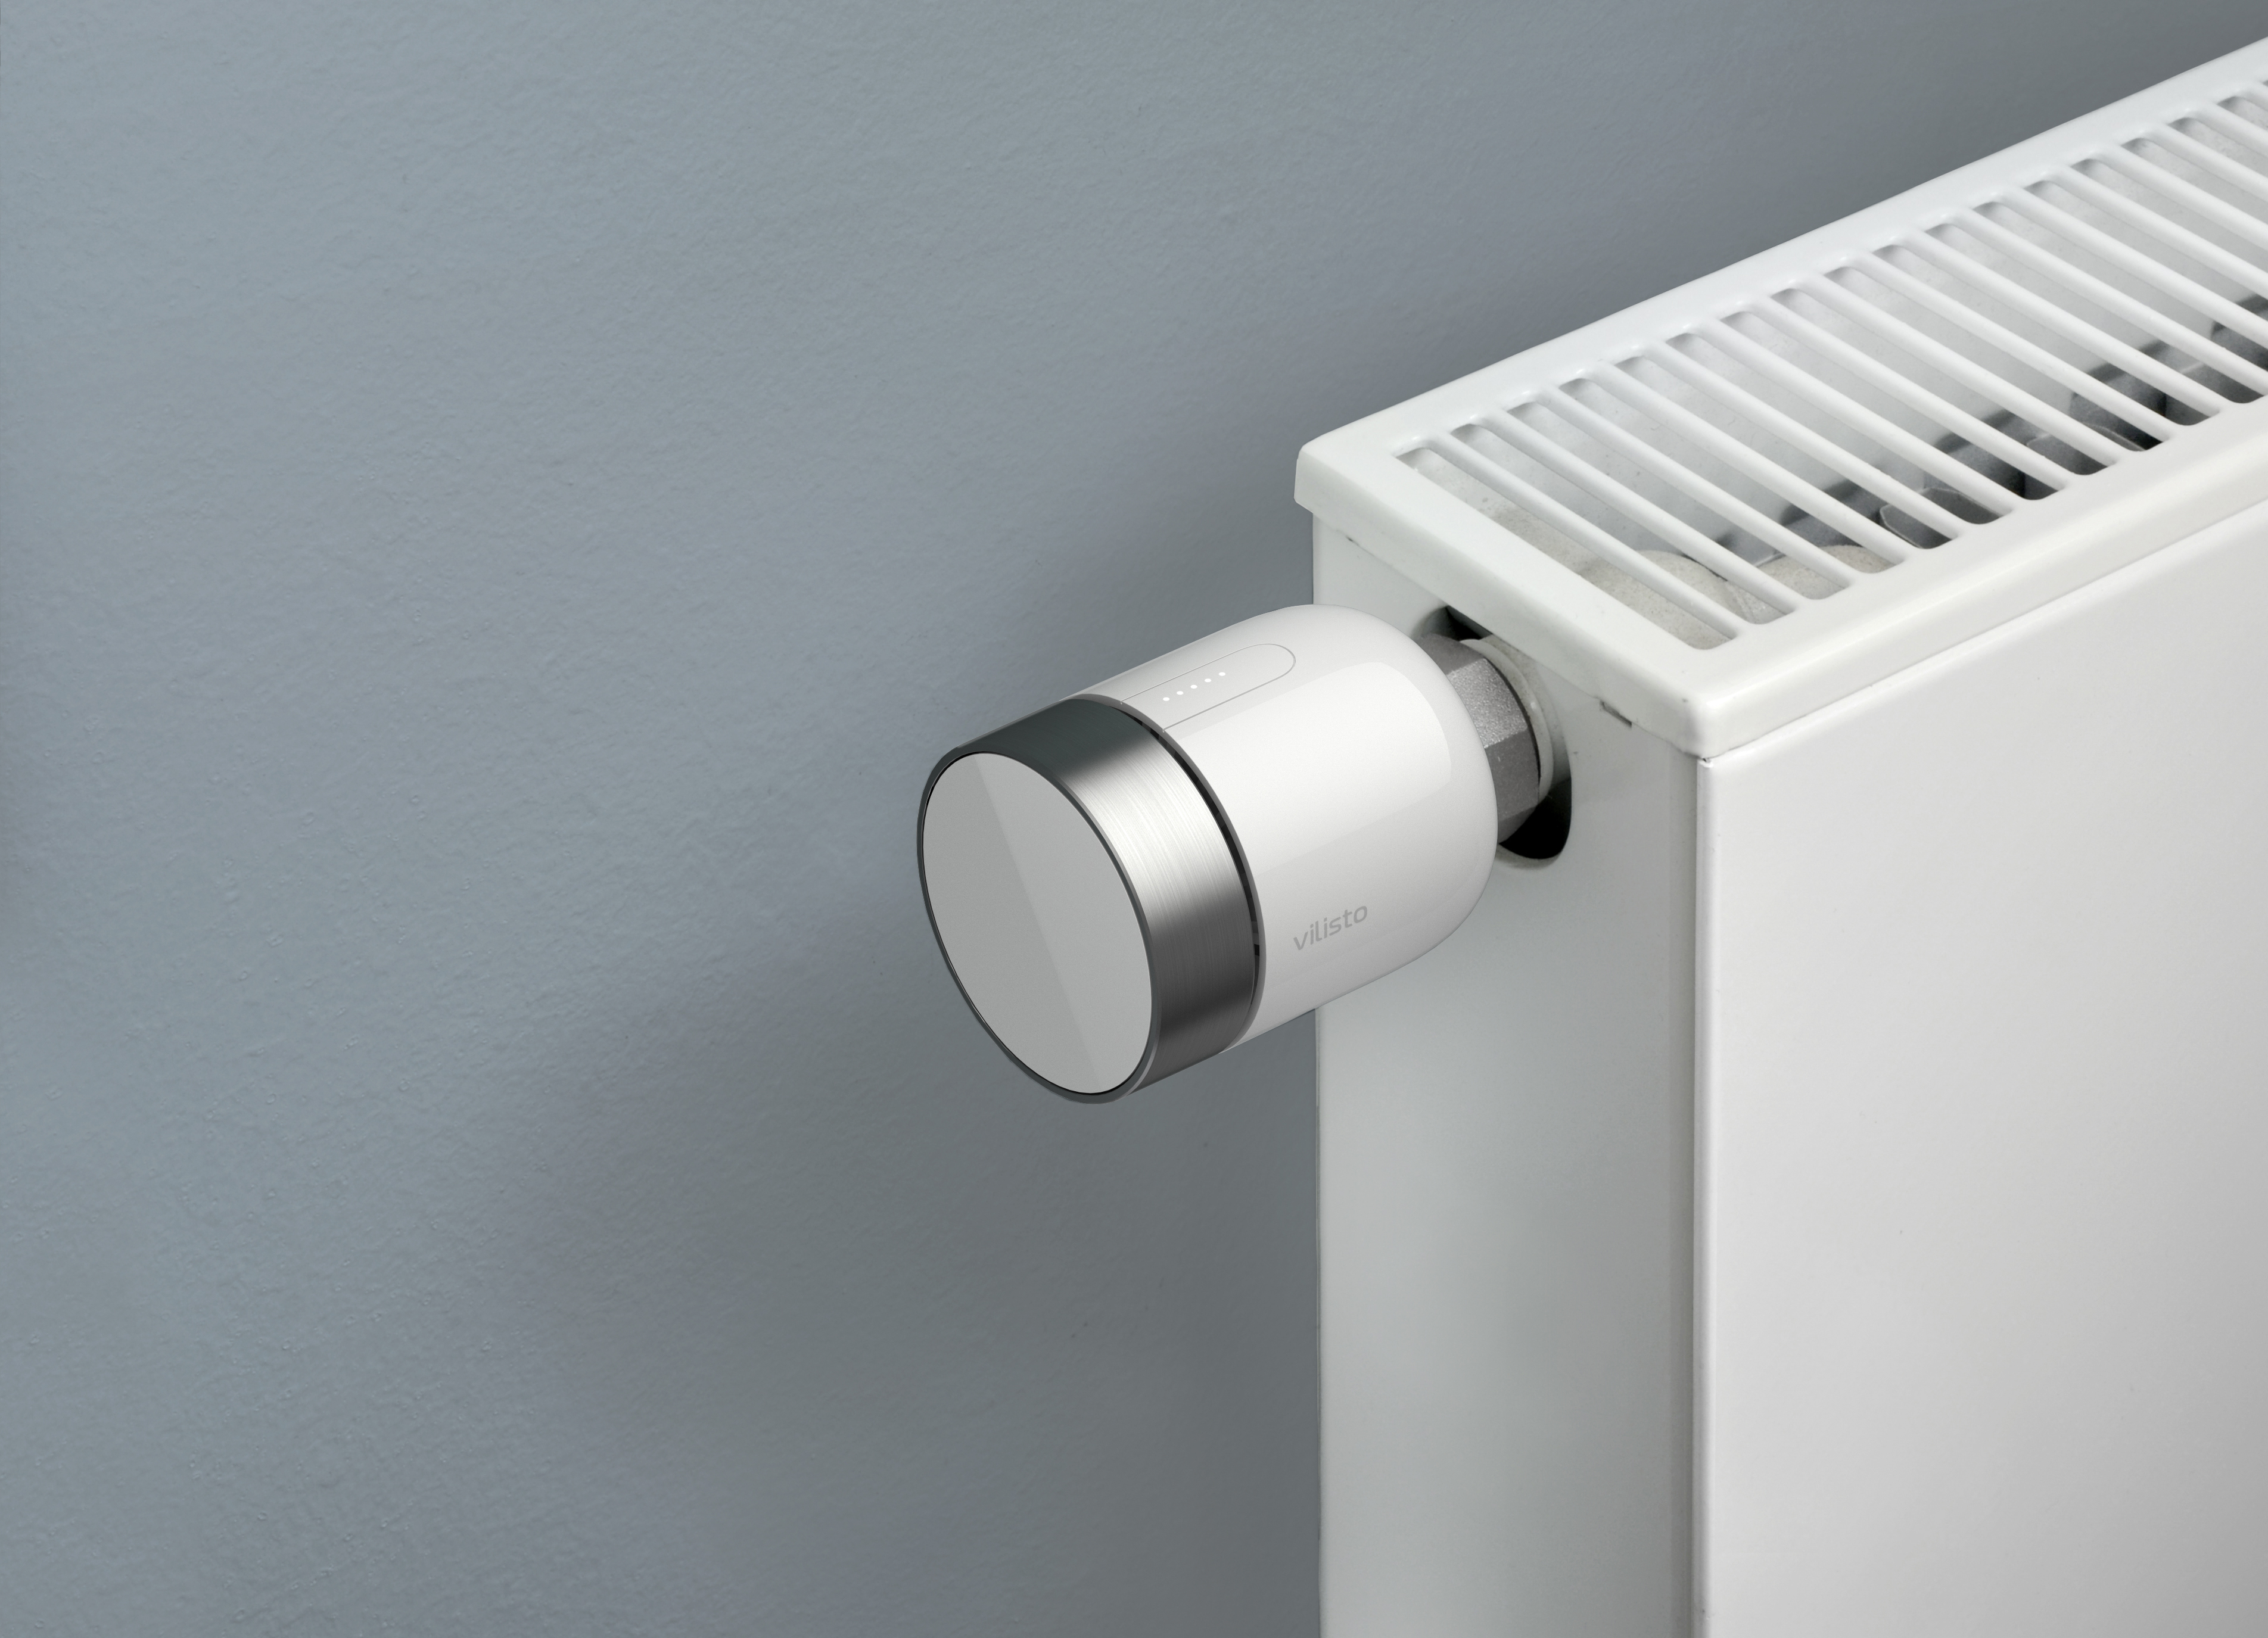 vilisto ovis radiator thermostat on heater radiator